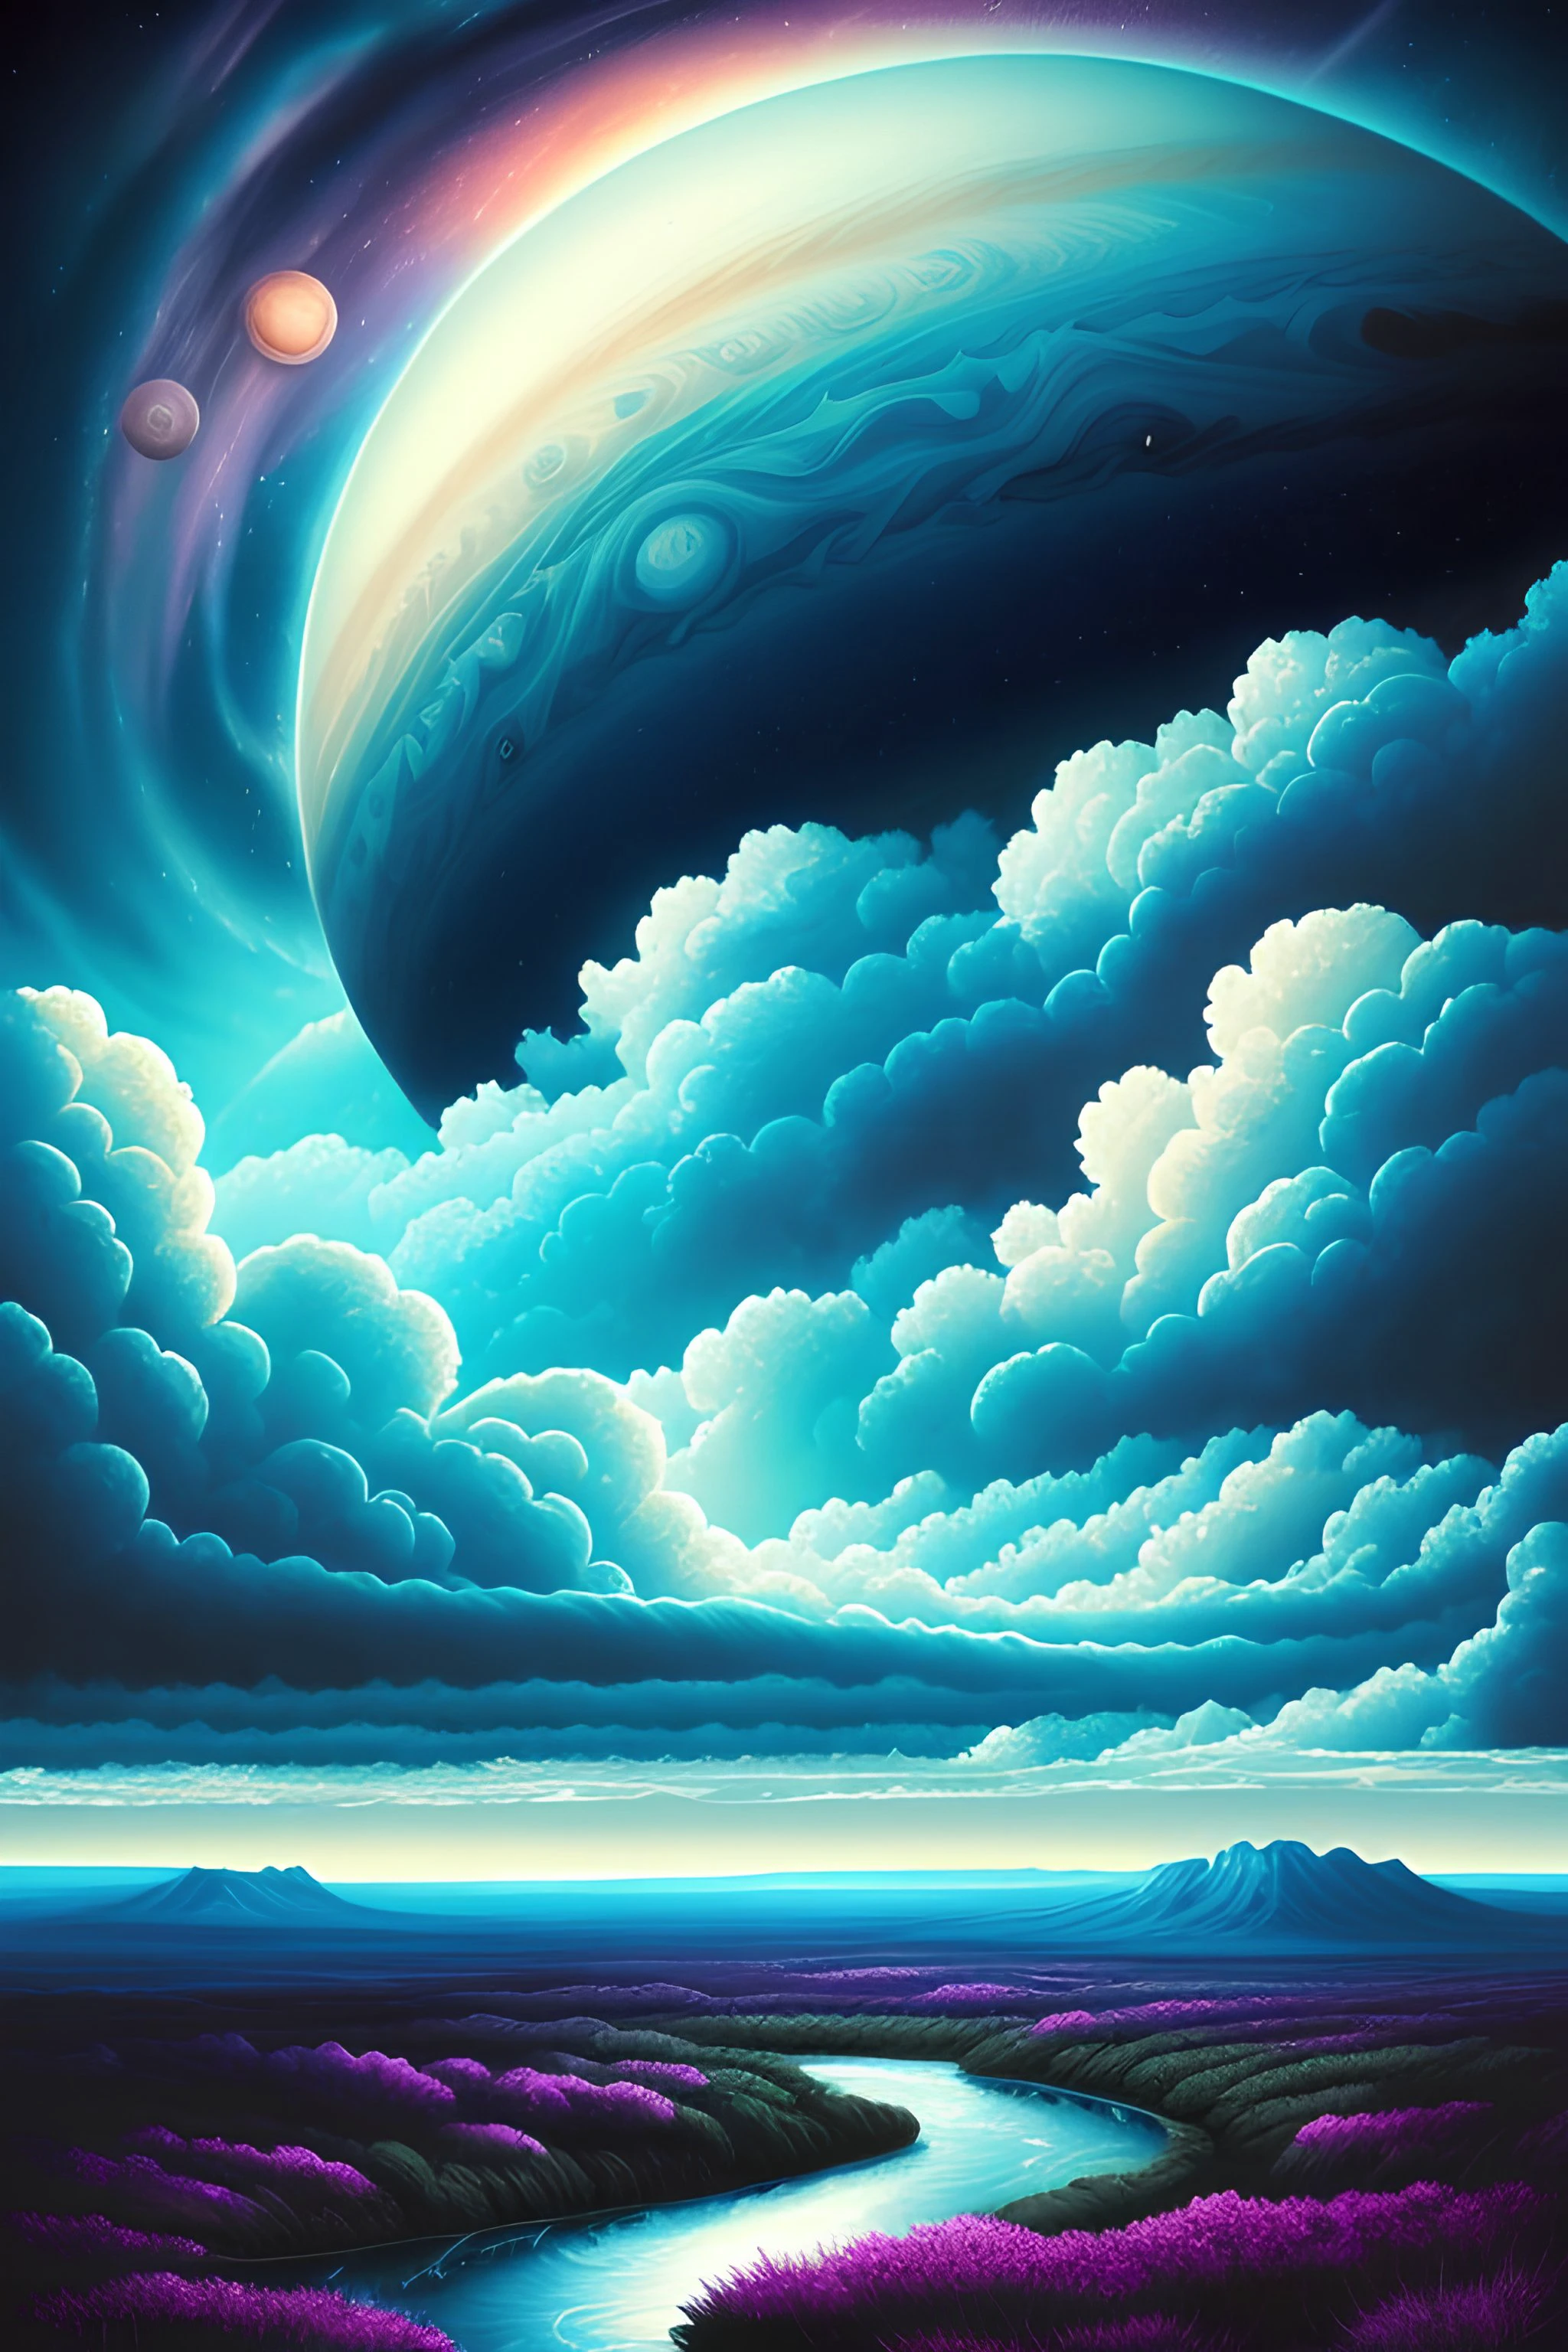 Ilustración de las nubes de Júpiter por Dan Mumford., Paisaje y vegetación alienígenas., escena épica, muchas nubes arremolinadas, Alta exposición, muy detallado, Realista, colores vibrantes teñidos de azul, uhd